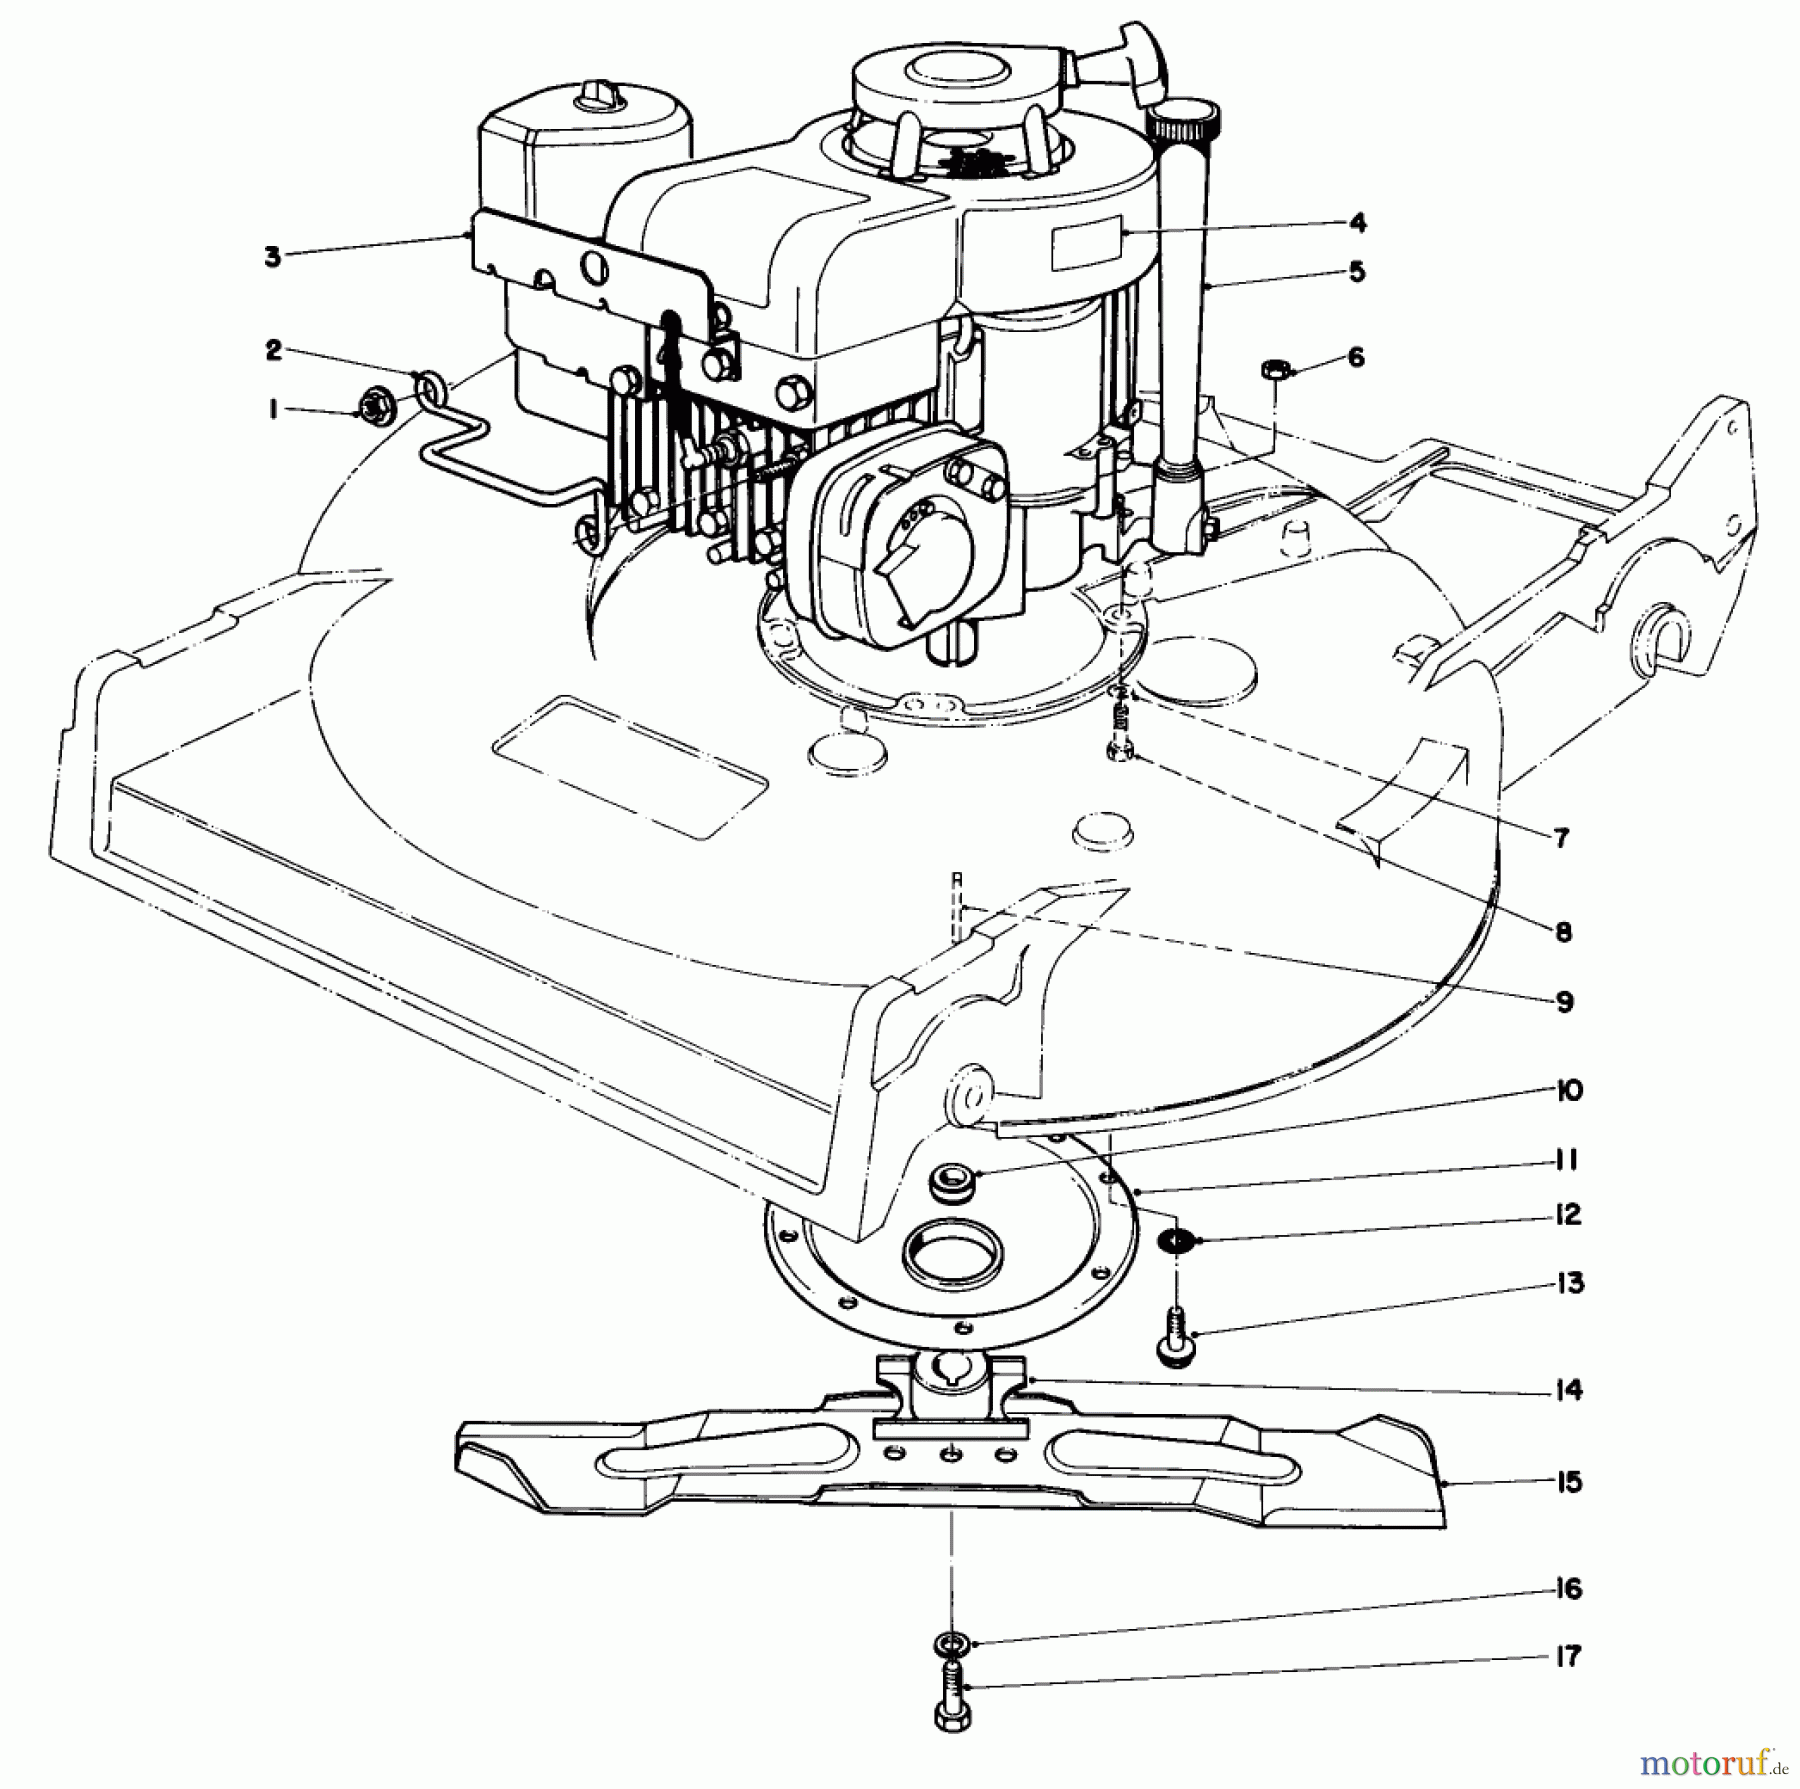  Toro Neu Mowers, Walk-Behind Seite 2 22015 - Toro Lawnmower, 1985 (5000001-5999999) ENGINE ASSEMBLY (MODEL 22015)